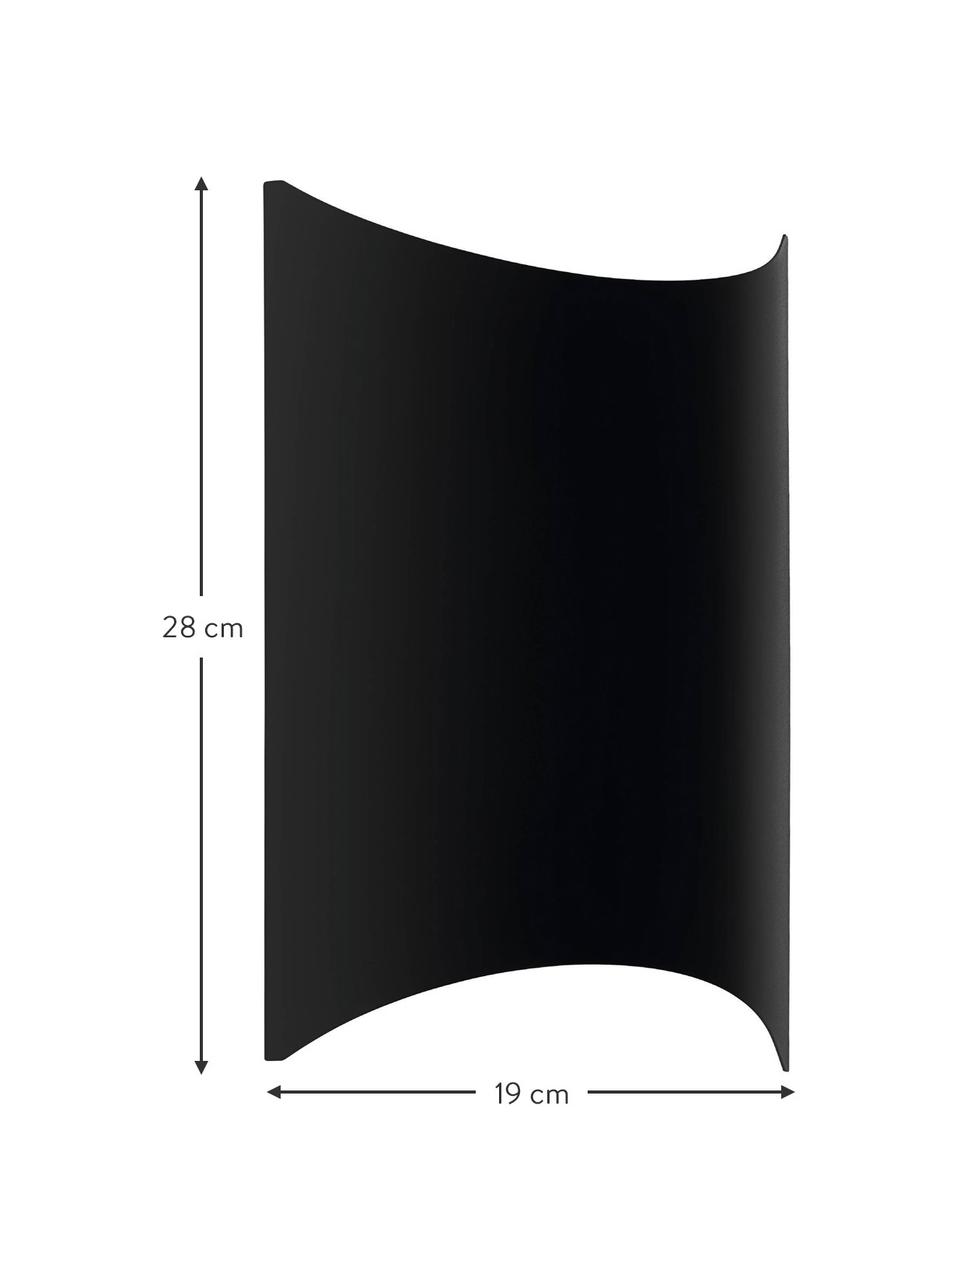 Kinkiet zewnętrzny LED Lagasco, Czarny, S 19 x W 28 cm